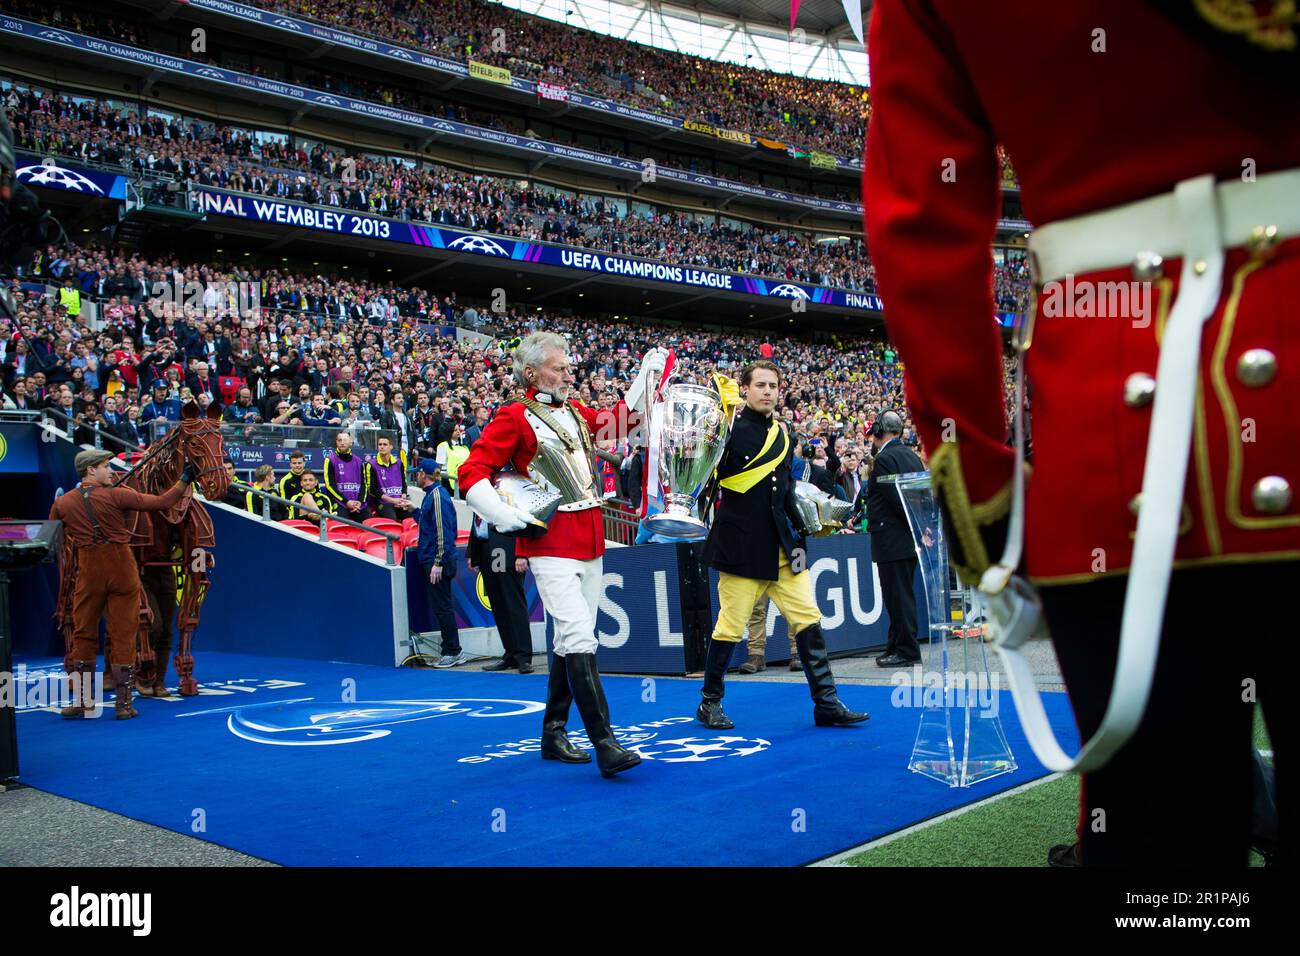 London, 25.05.2013, Wembley Paul Breitner in Ritterrüstung  -  im Hintergrund Lars Ricken  Borussia Dortmund - FC Bayern München Champions League Fina Stock Photo